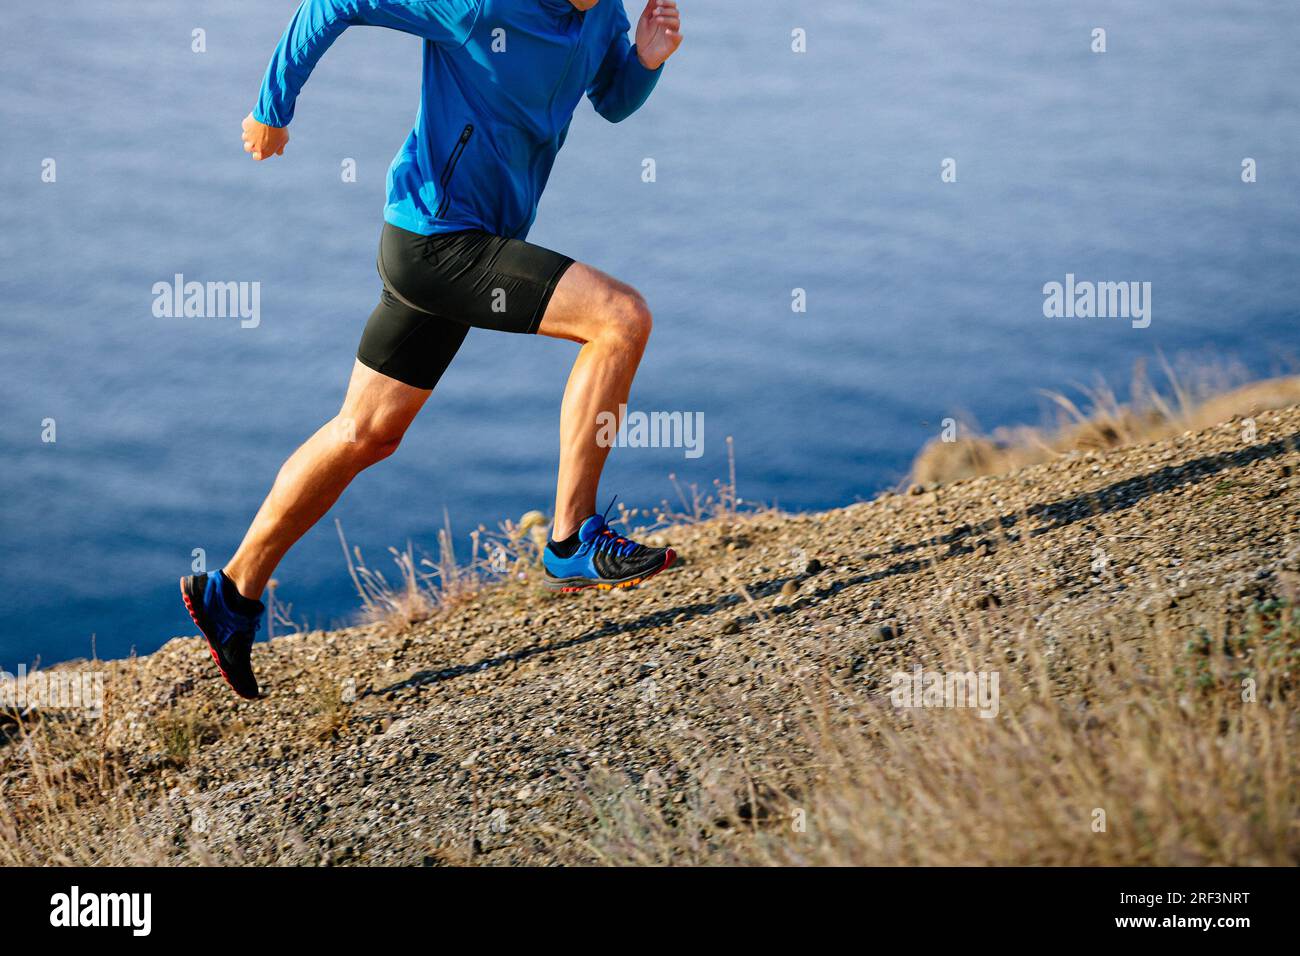 l'atleta runner inizia a correre in montagna in salita con giacca blu e tights neri, sfondo di mare Foto Stock